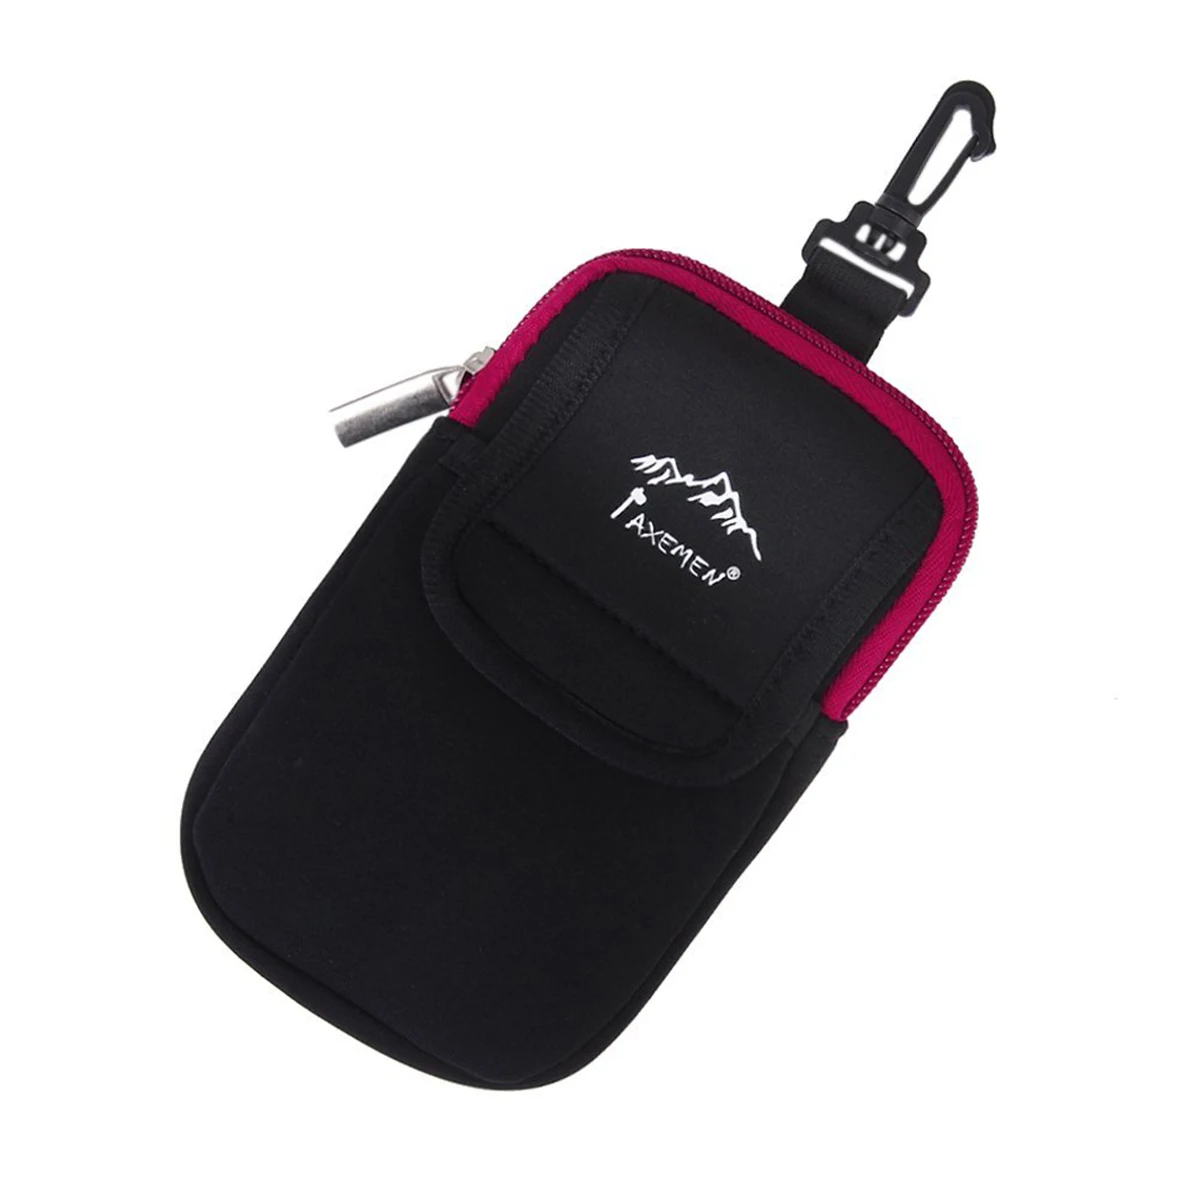 Многофункциональный домофон телефон гаджеты Чехол Держатель с крюком для альпинизма кемпинга походный рюкзак(черный, красный